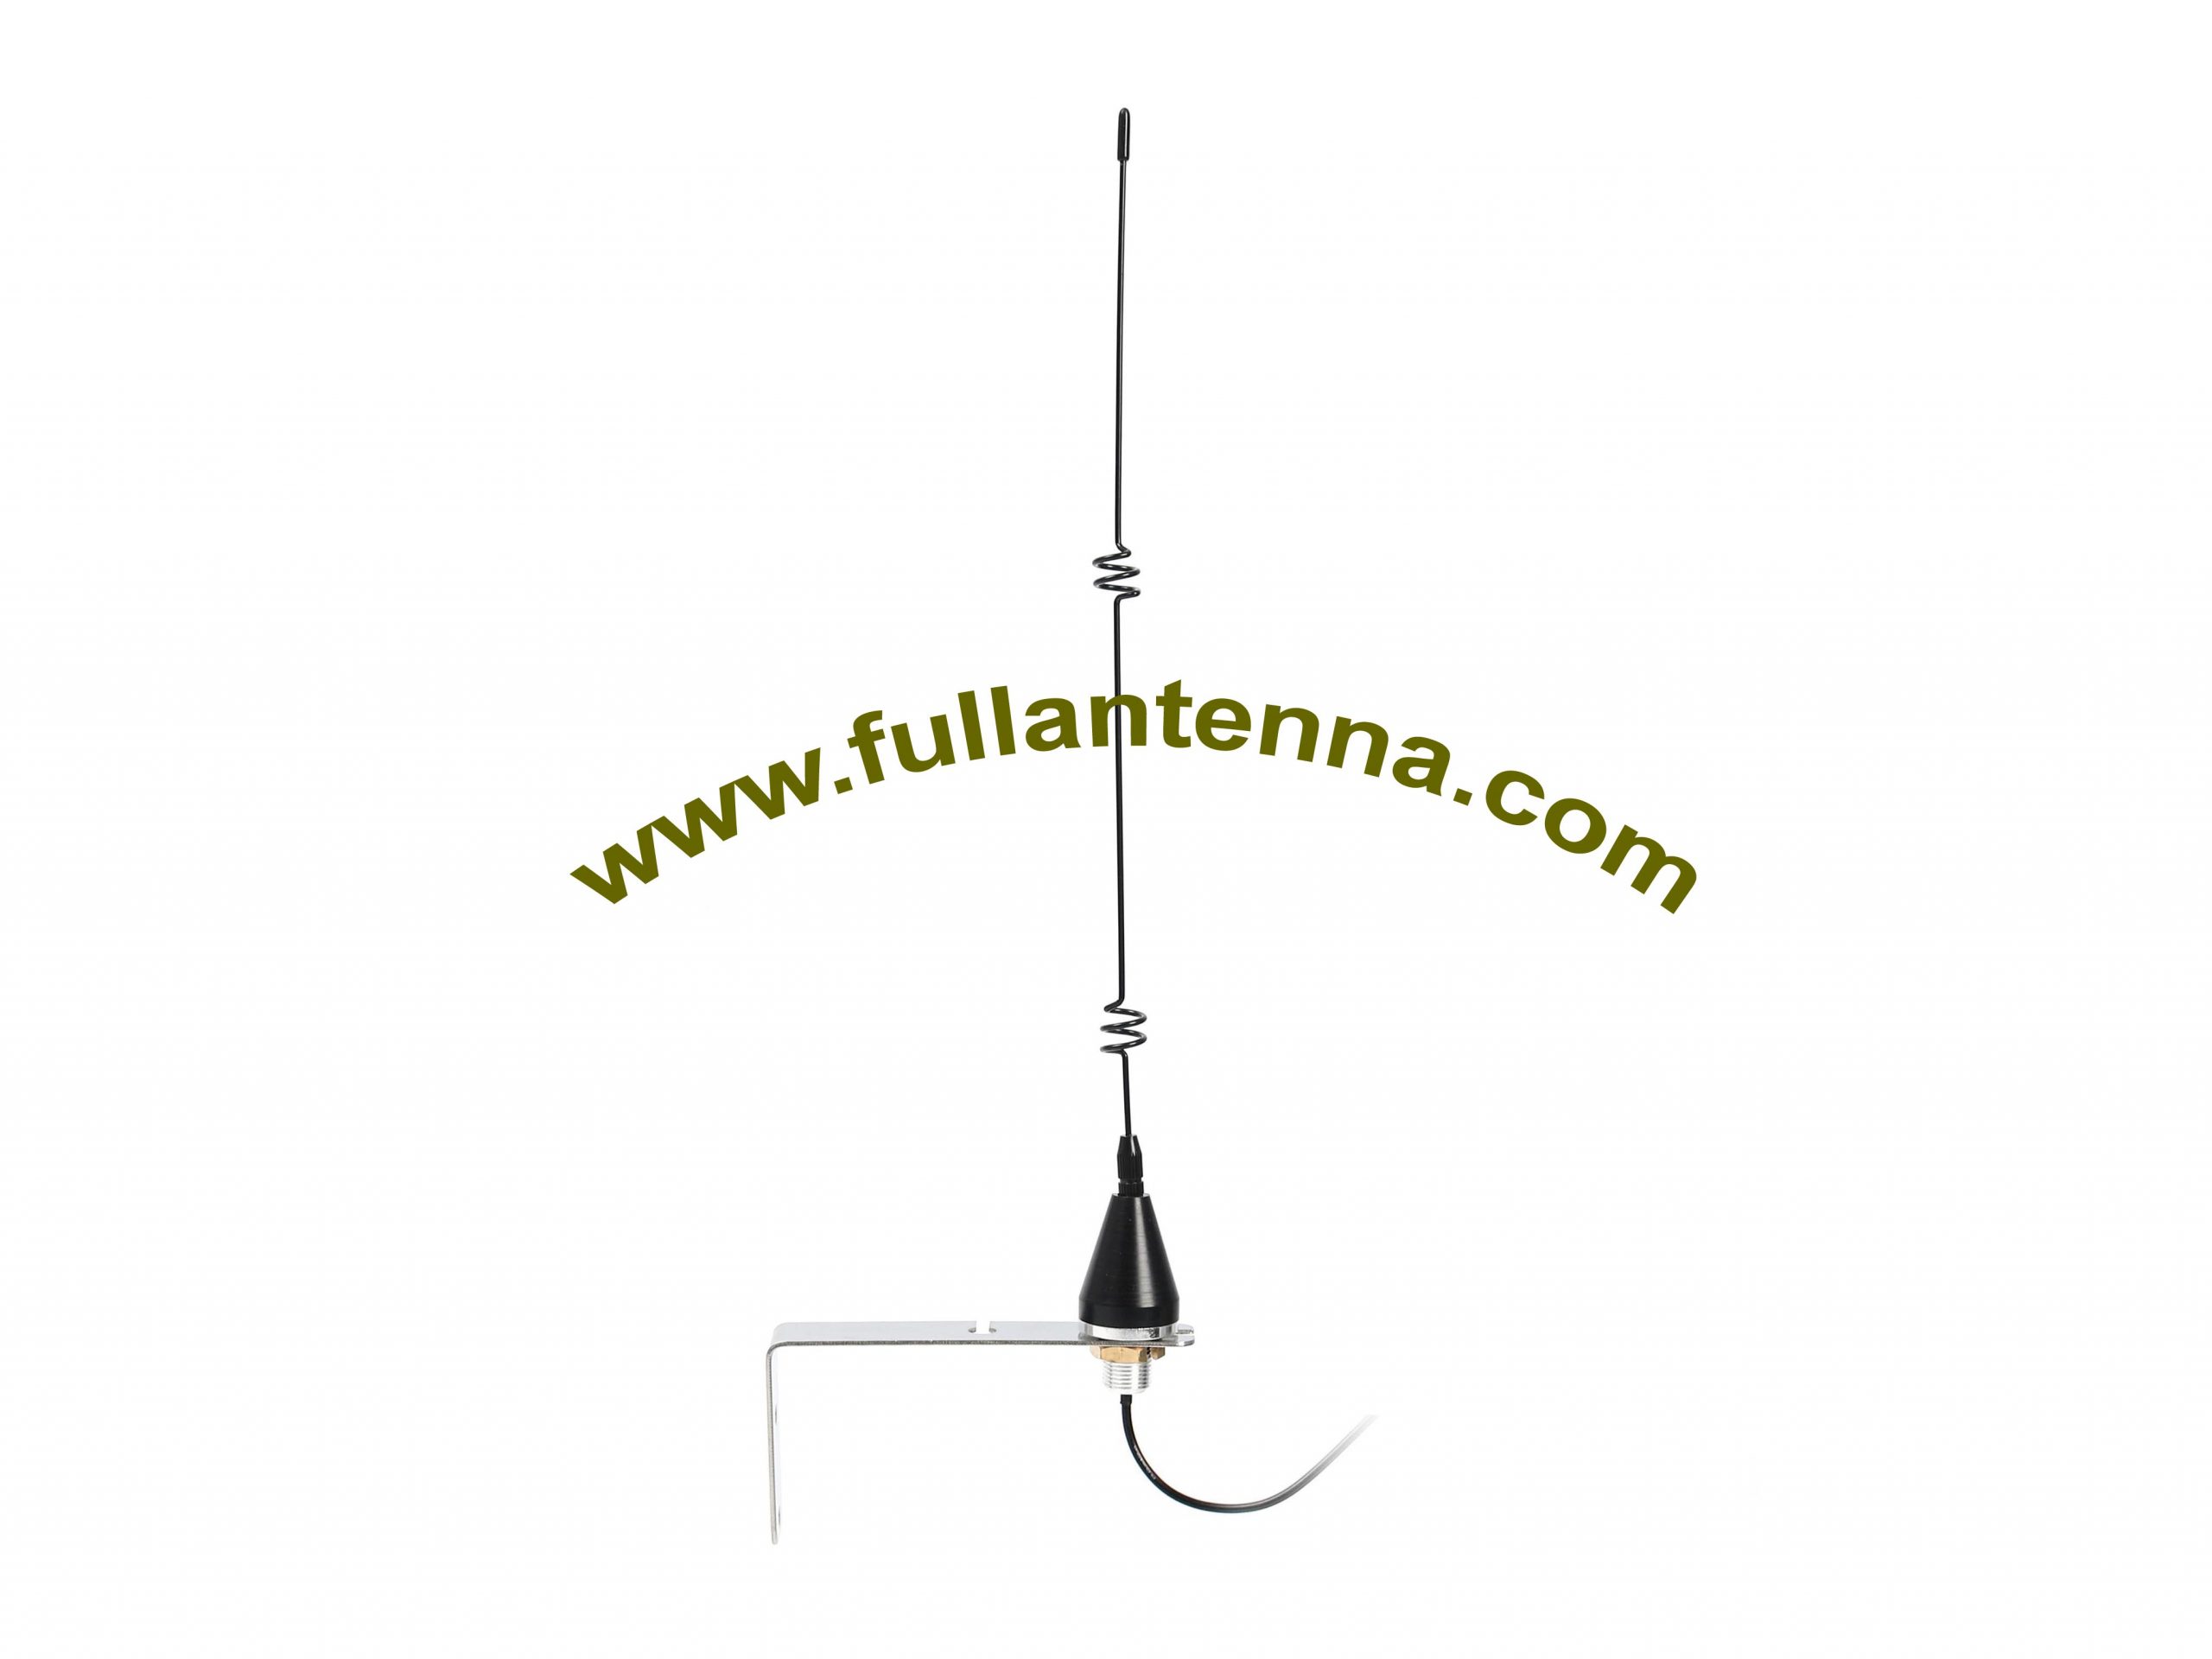 P/N:FALTE.0603L,4G/LTE External Antenna,4G  LTEantenna with L bracket  wall mount